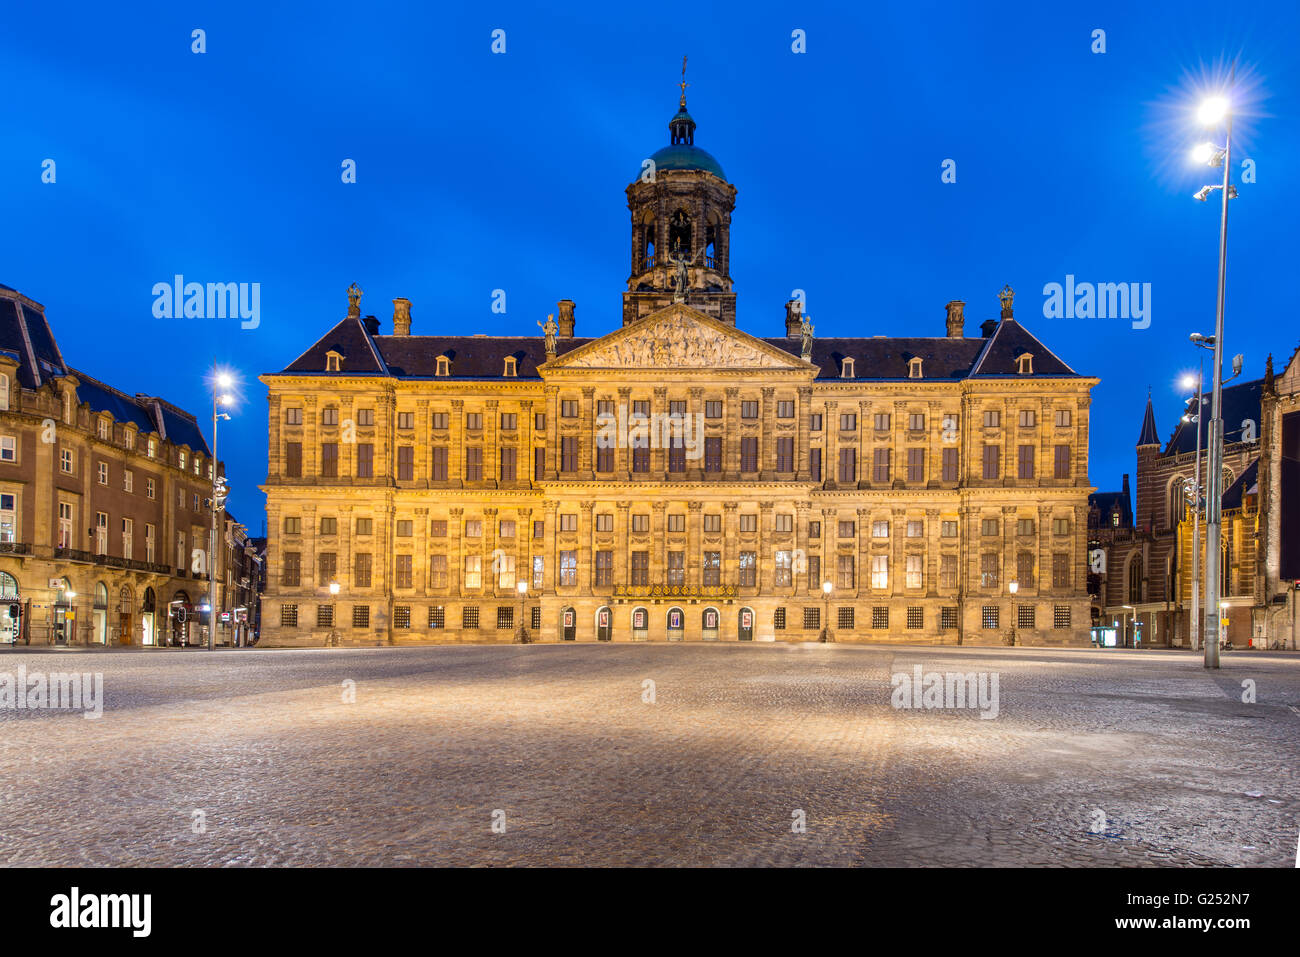 Königliche Palais in Amsterdam, am Dam-Platz am Abend. Niederlande Stockfoto